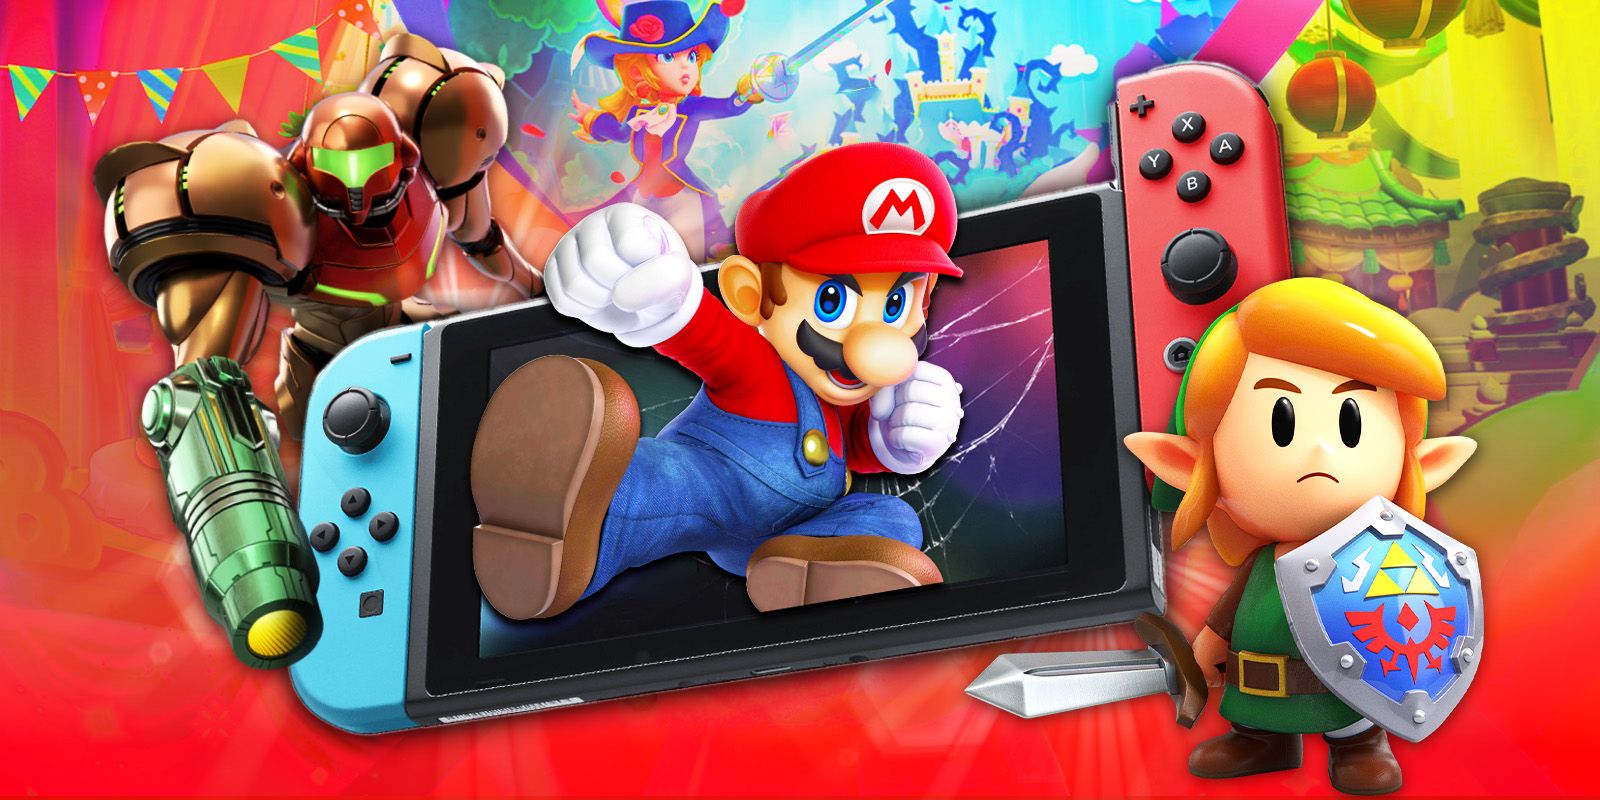 Утечка характеристик Nintendo Switch 2: насколько мощной будет новая консоль